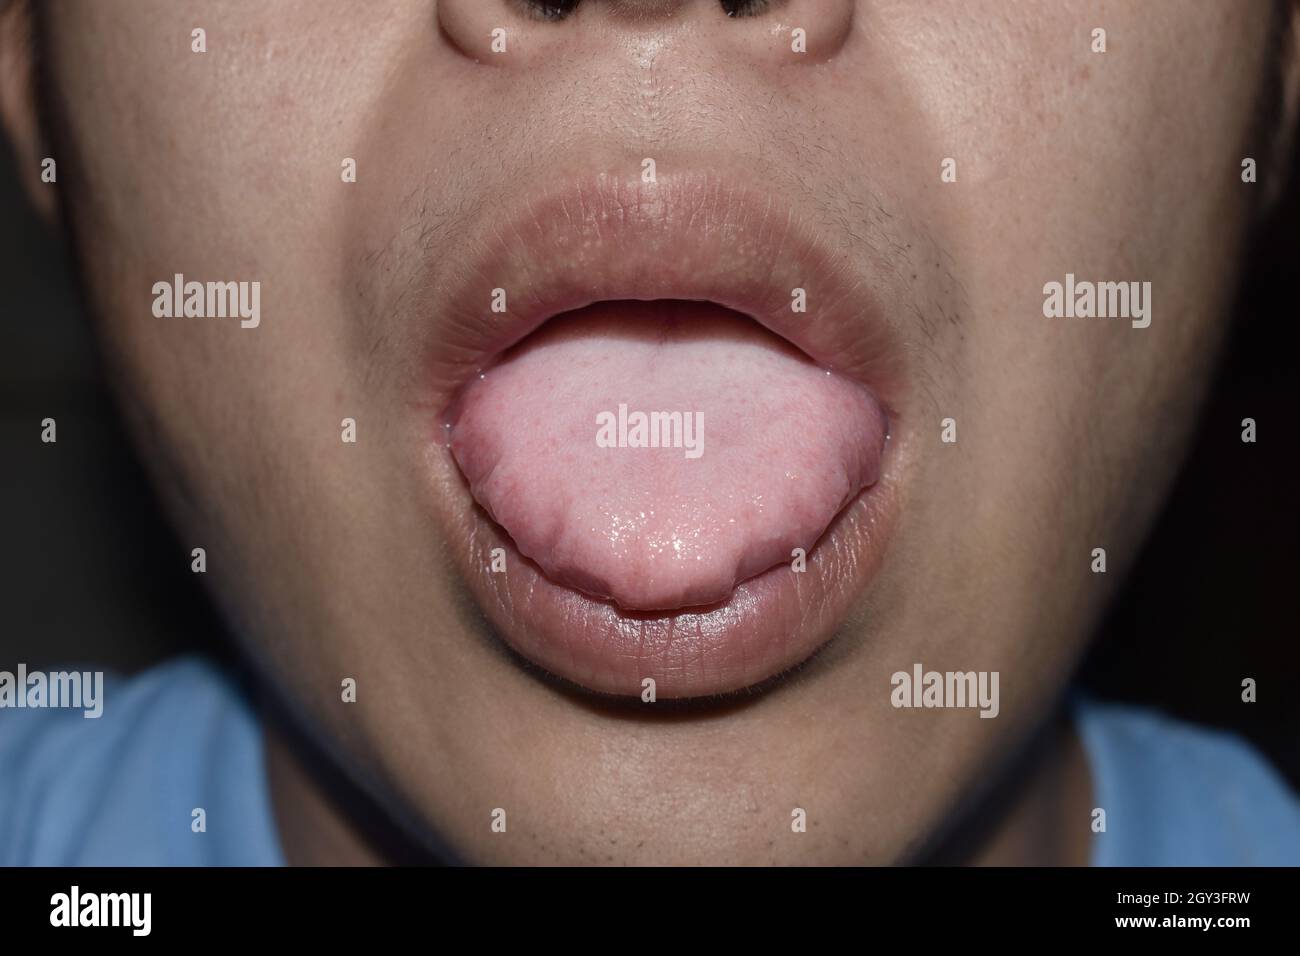 Beschichtete Zunge oder weiße Zunge eines asiatischen, chinesischen Mannes. Es erscheint mit einer weißen Schicht, wenn sich Rückstände, Bakterien und abgestorbene Zellen zwischen vergrößertem p absetzen Stockfoto